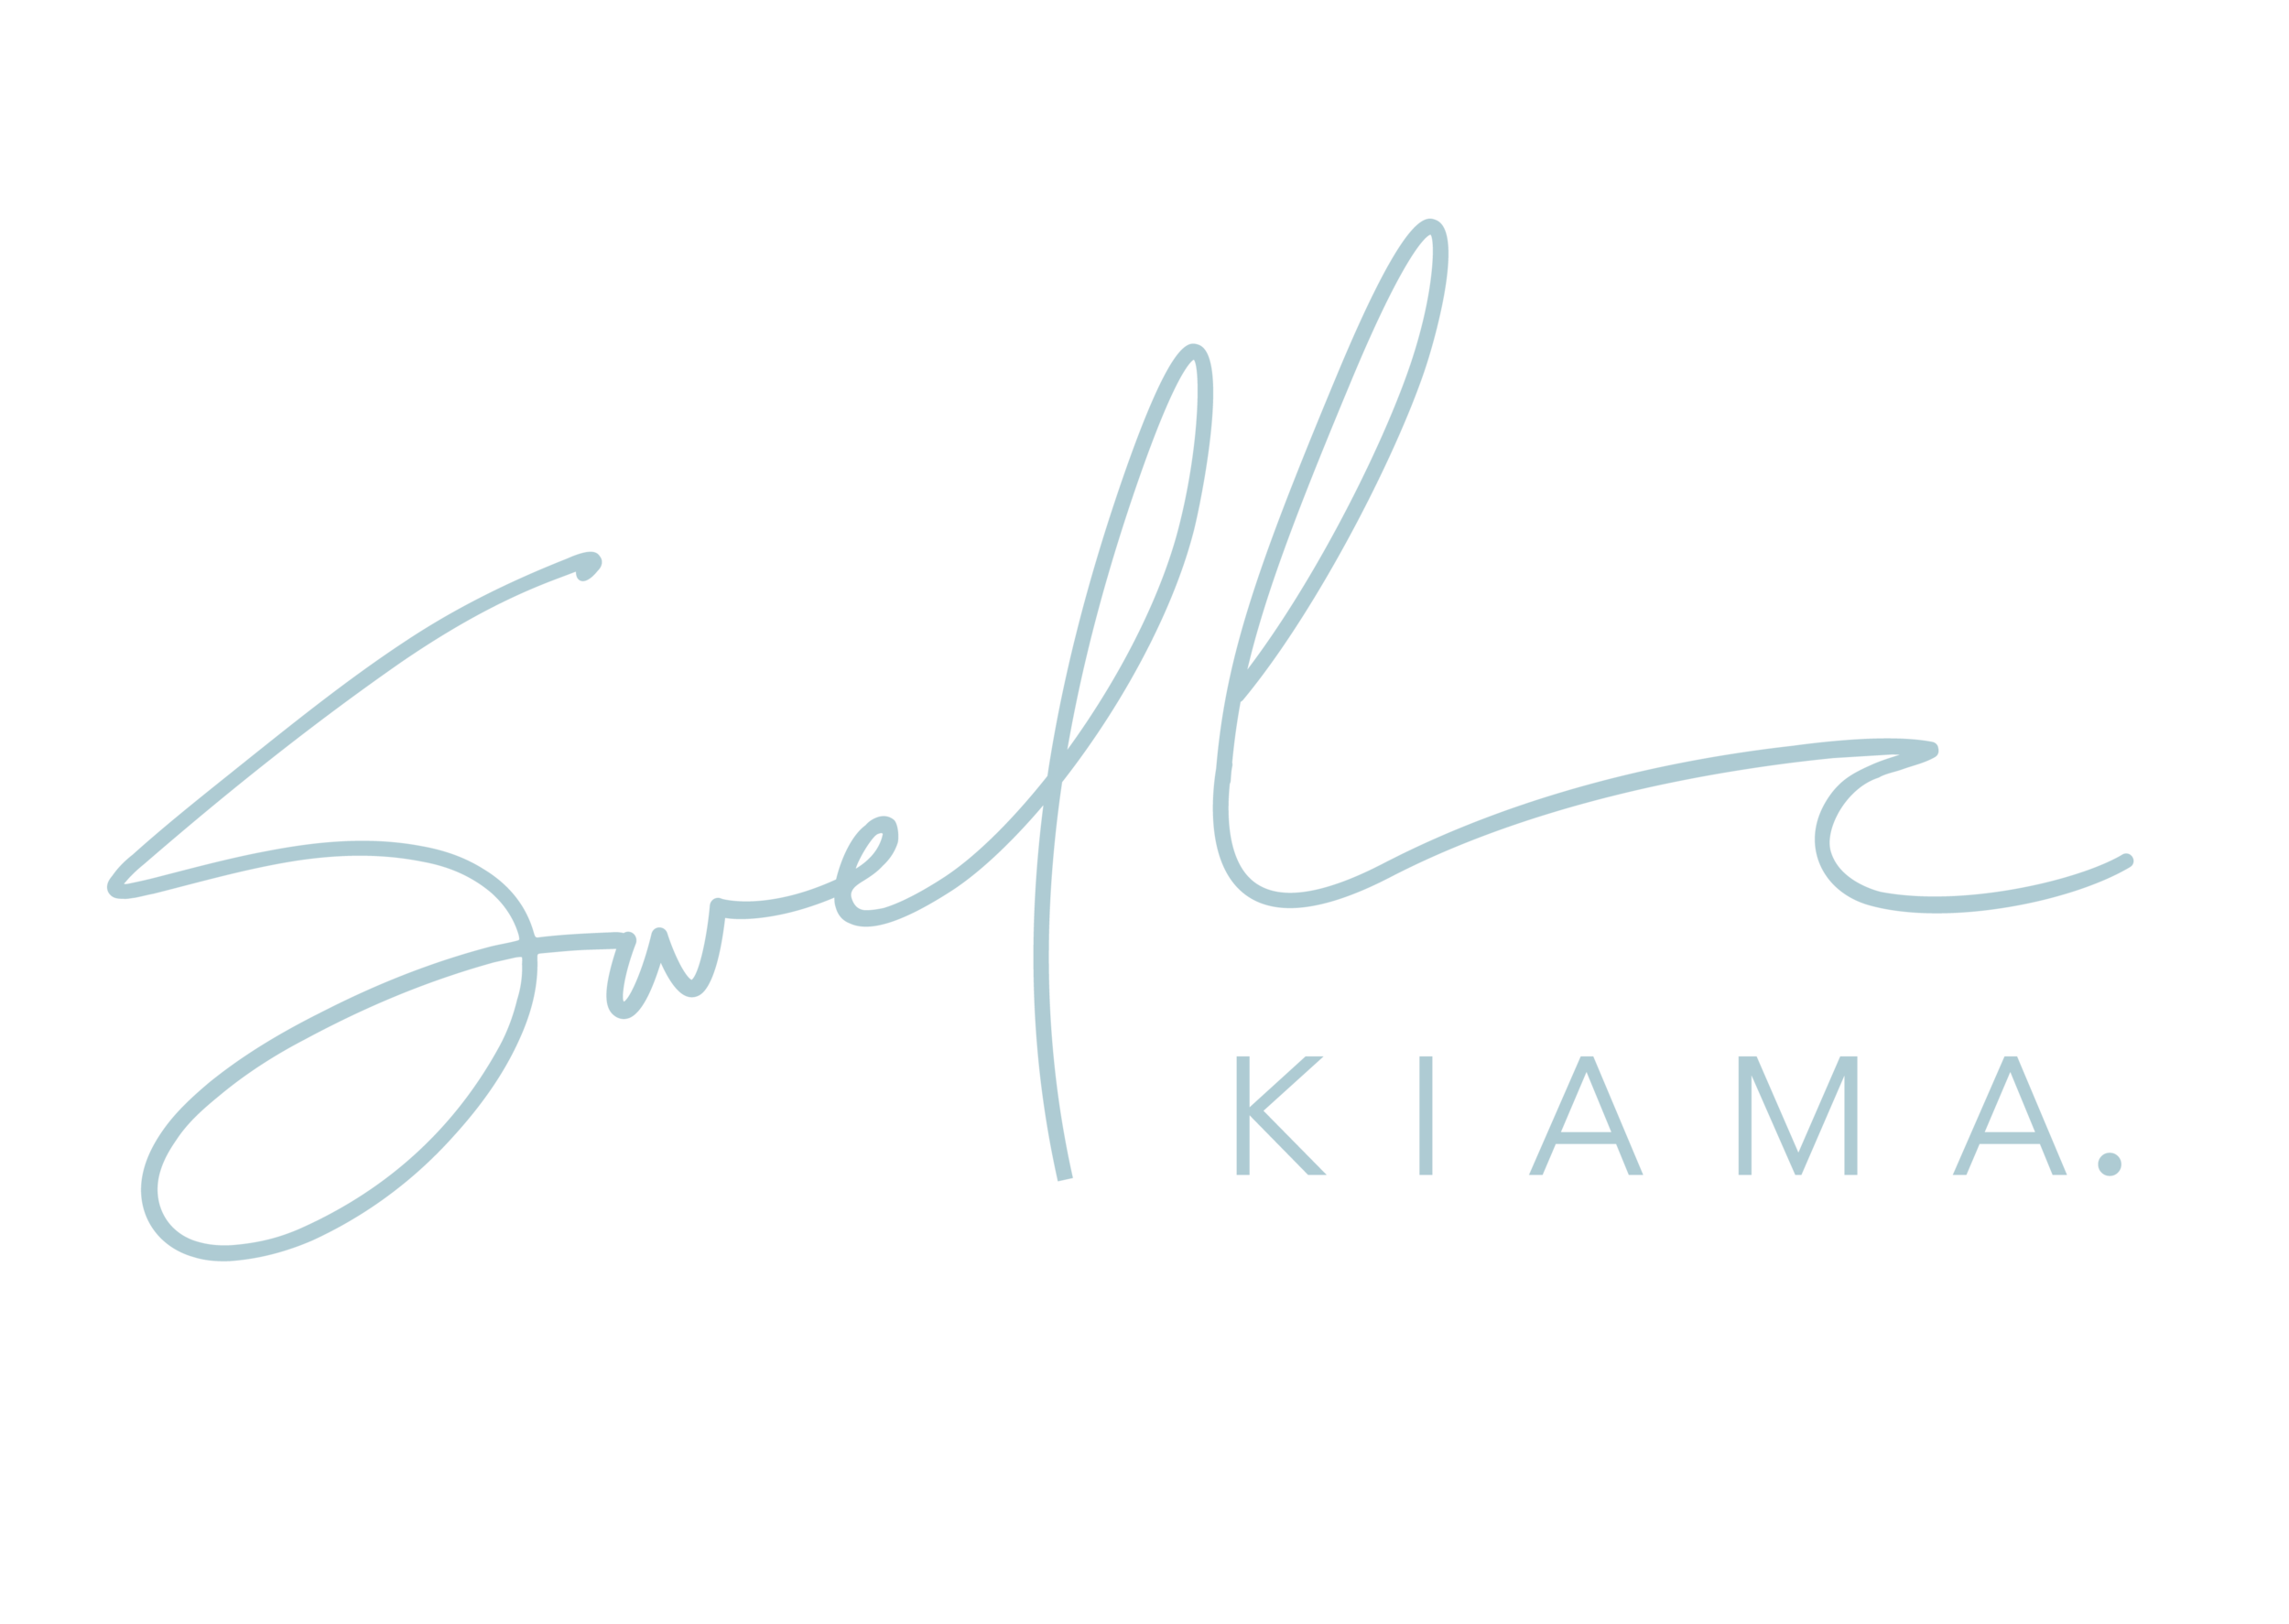 Swell Kiama